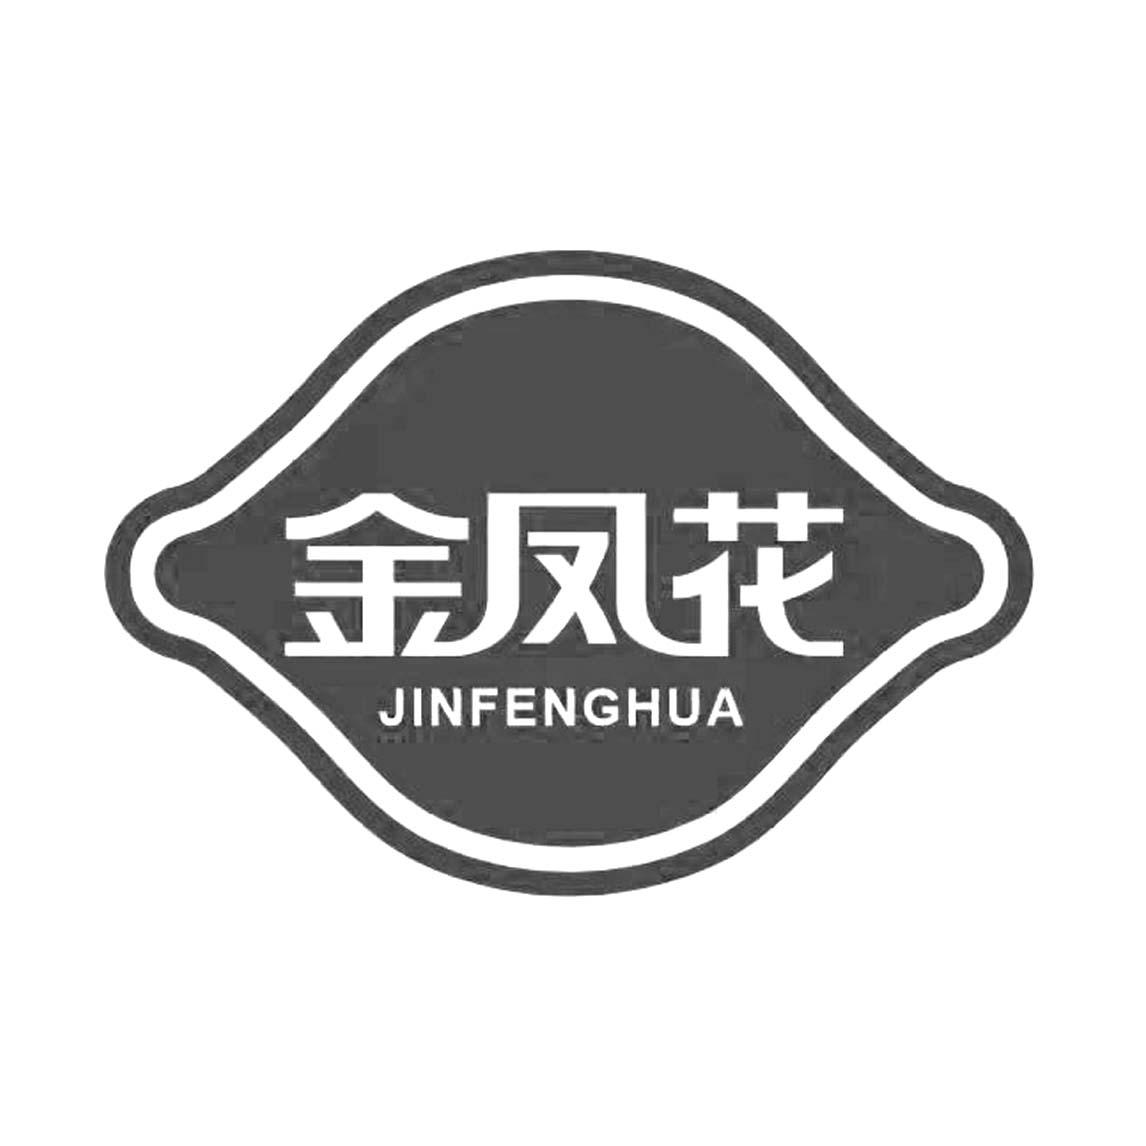 金凤花logo